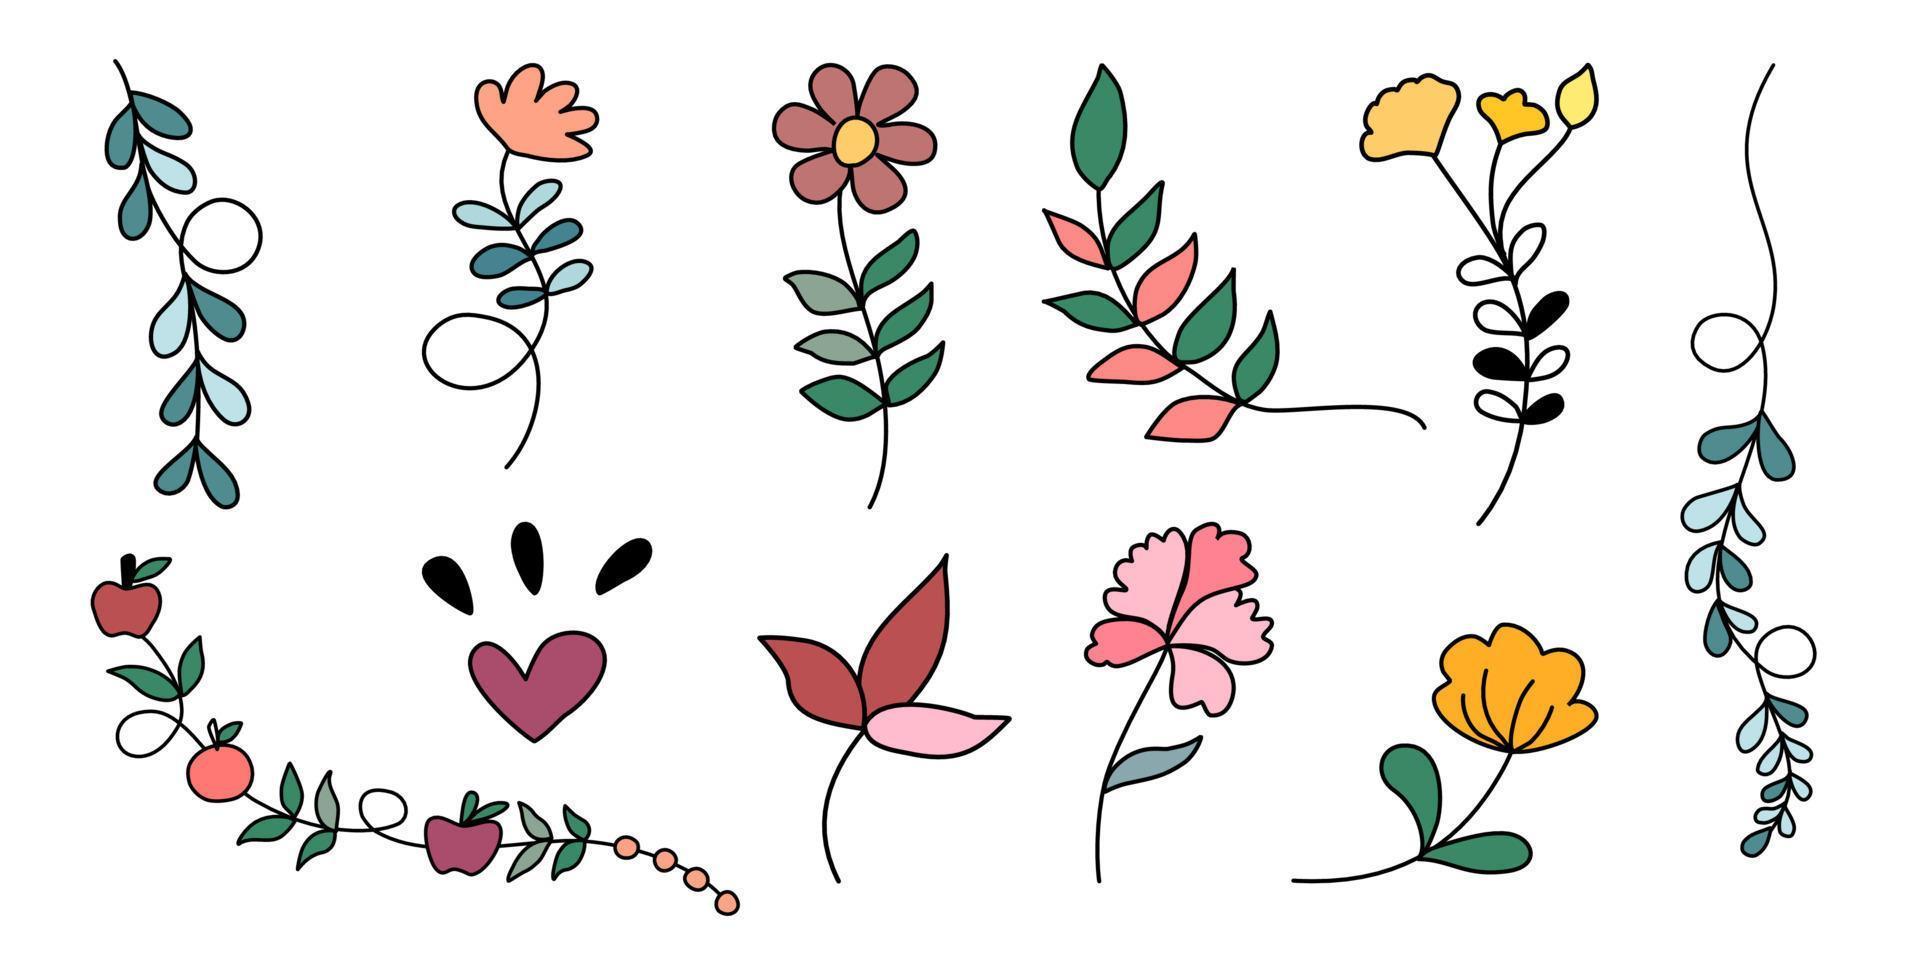 conjunto vectorial de elementos florales y de hojas diseñados en estilo doodle para decoraciones, tarjetas, impresiones digitales, patrones de papel, patrones de ropa, pegatinas, almohadas, decoraciones temáticas de primavera, etc. vector